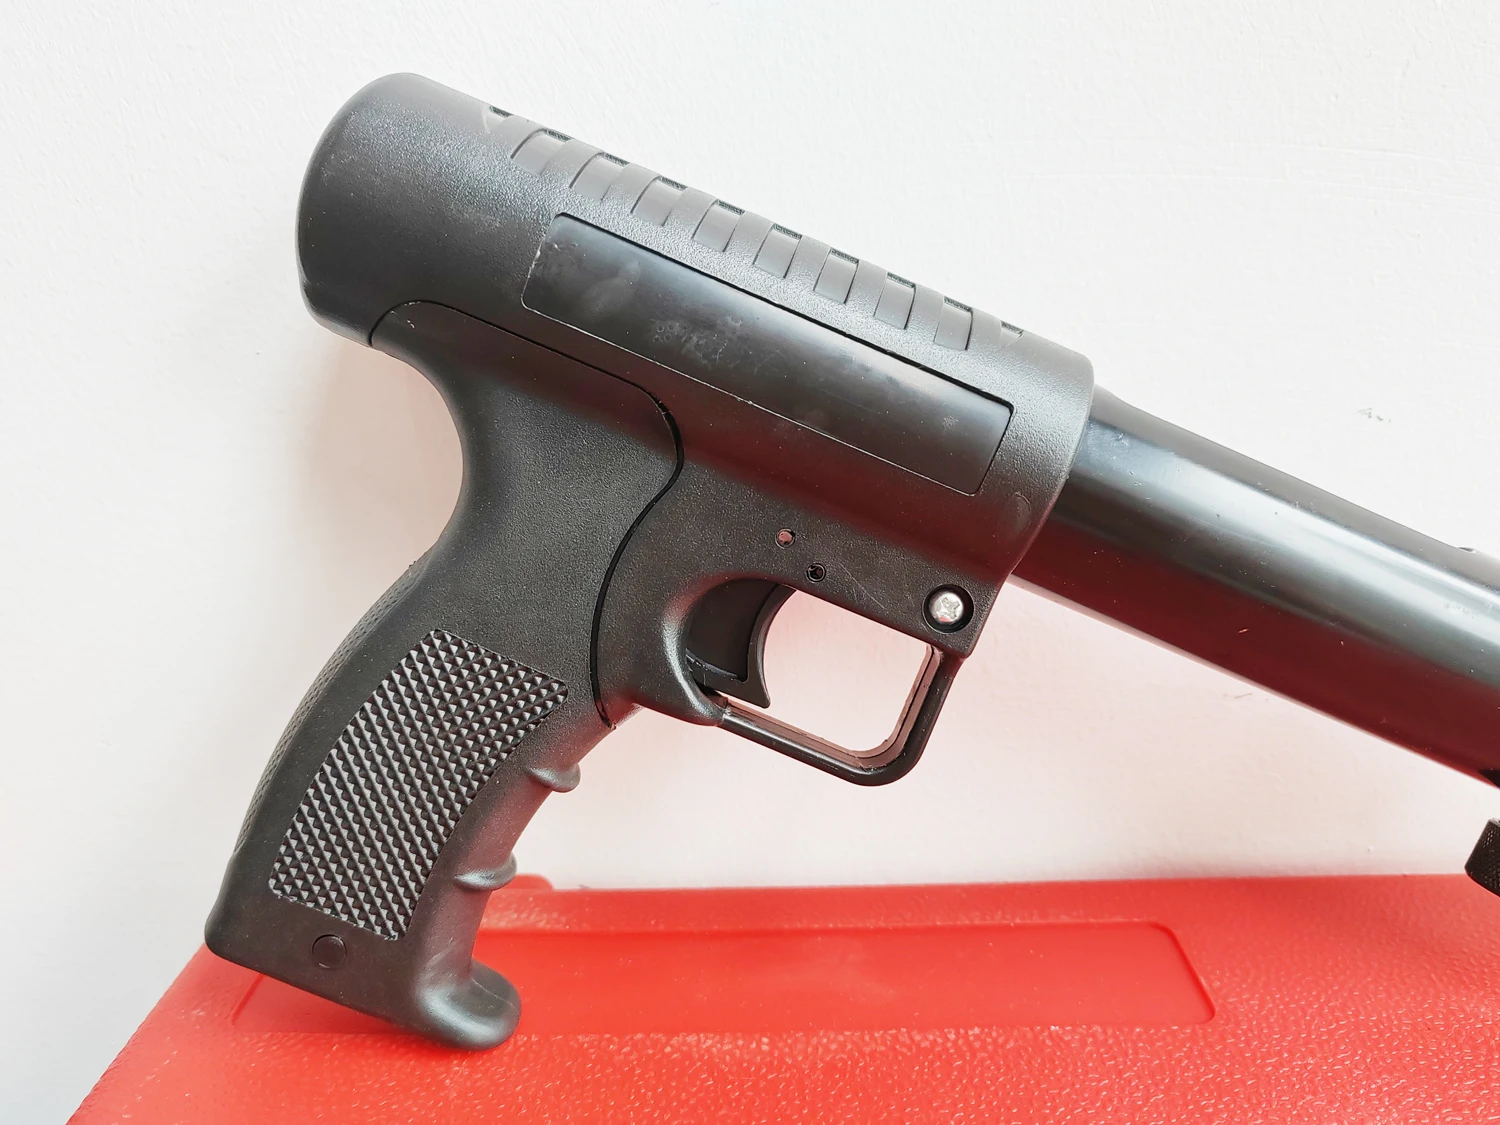 399 Pistolet À Clous - Buy Pin Nail Gun,Pin Nail Gun,399 Pin Nail Gun  Product on Alibaba.com